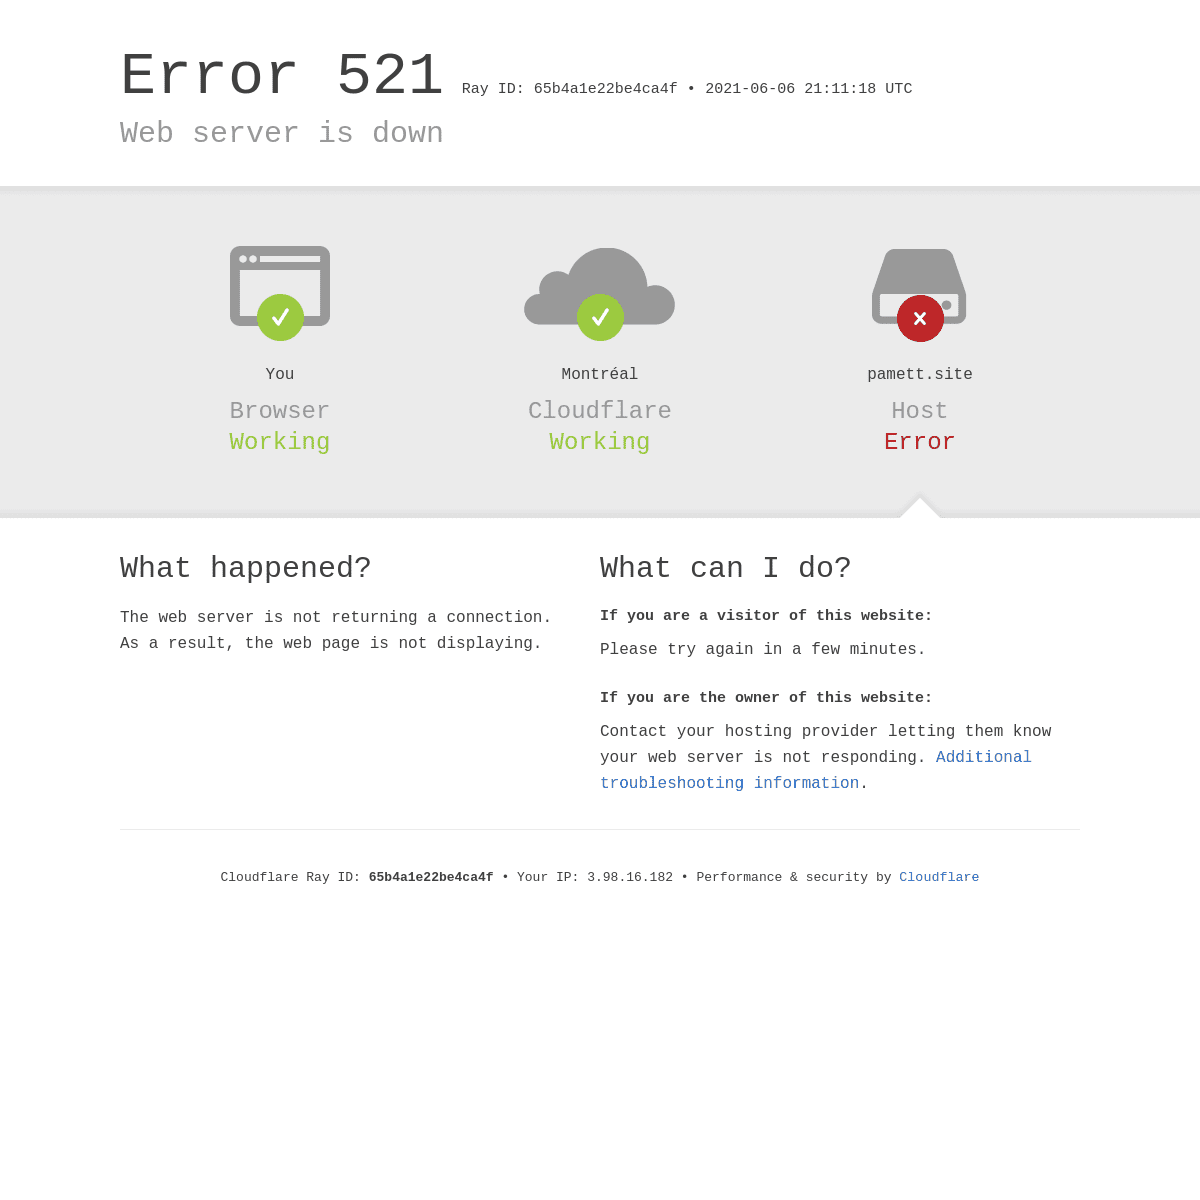 pamett.site - 521- Web server is down